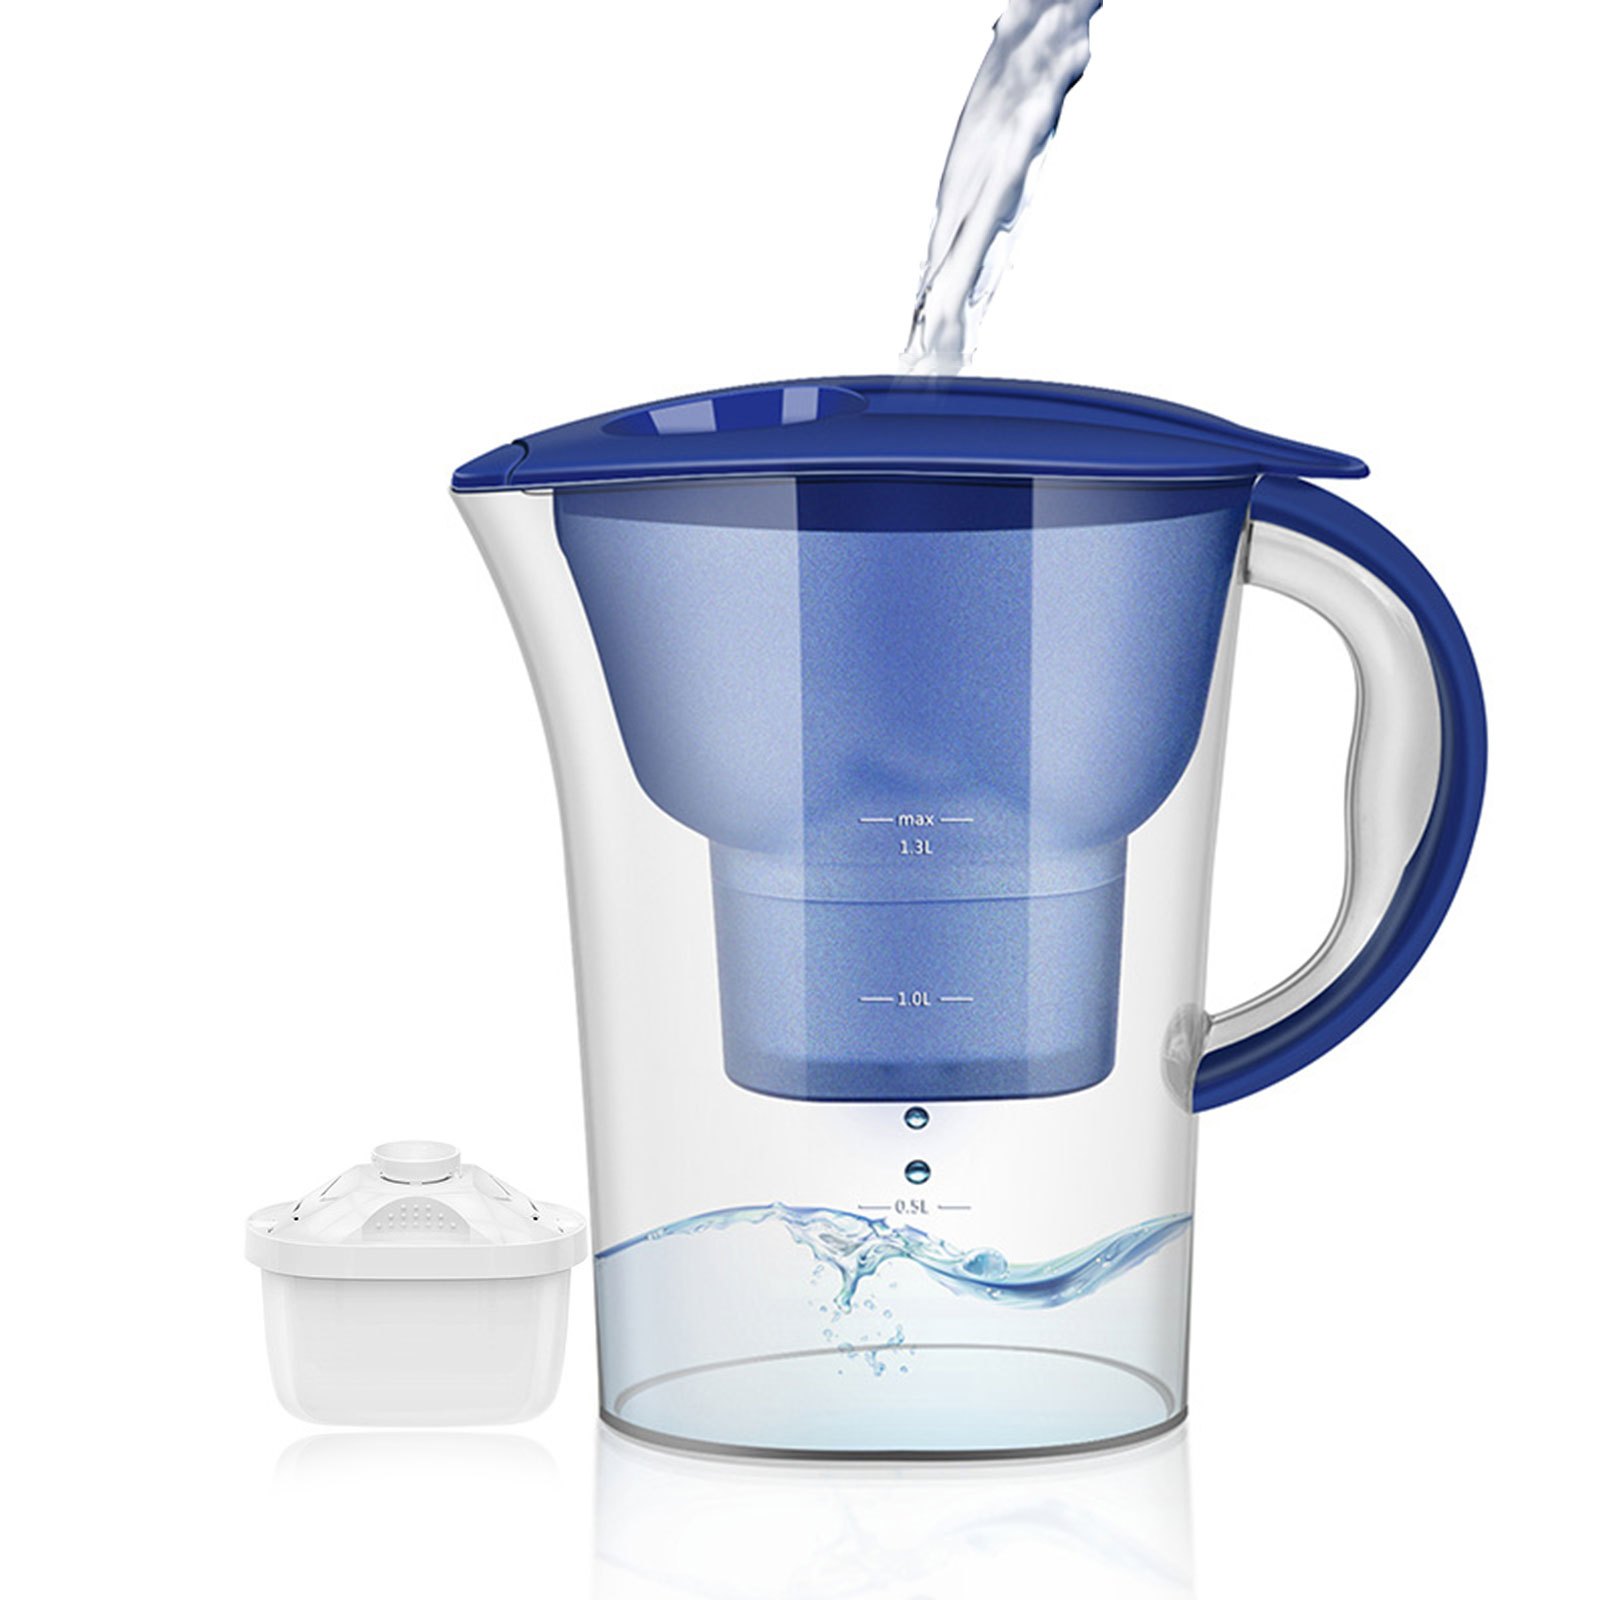 BRITA Glass Water Filter Jug Light Blue (2.5L)